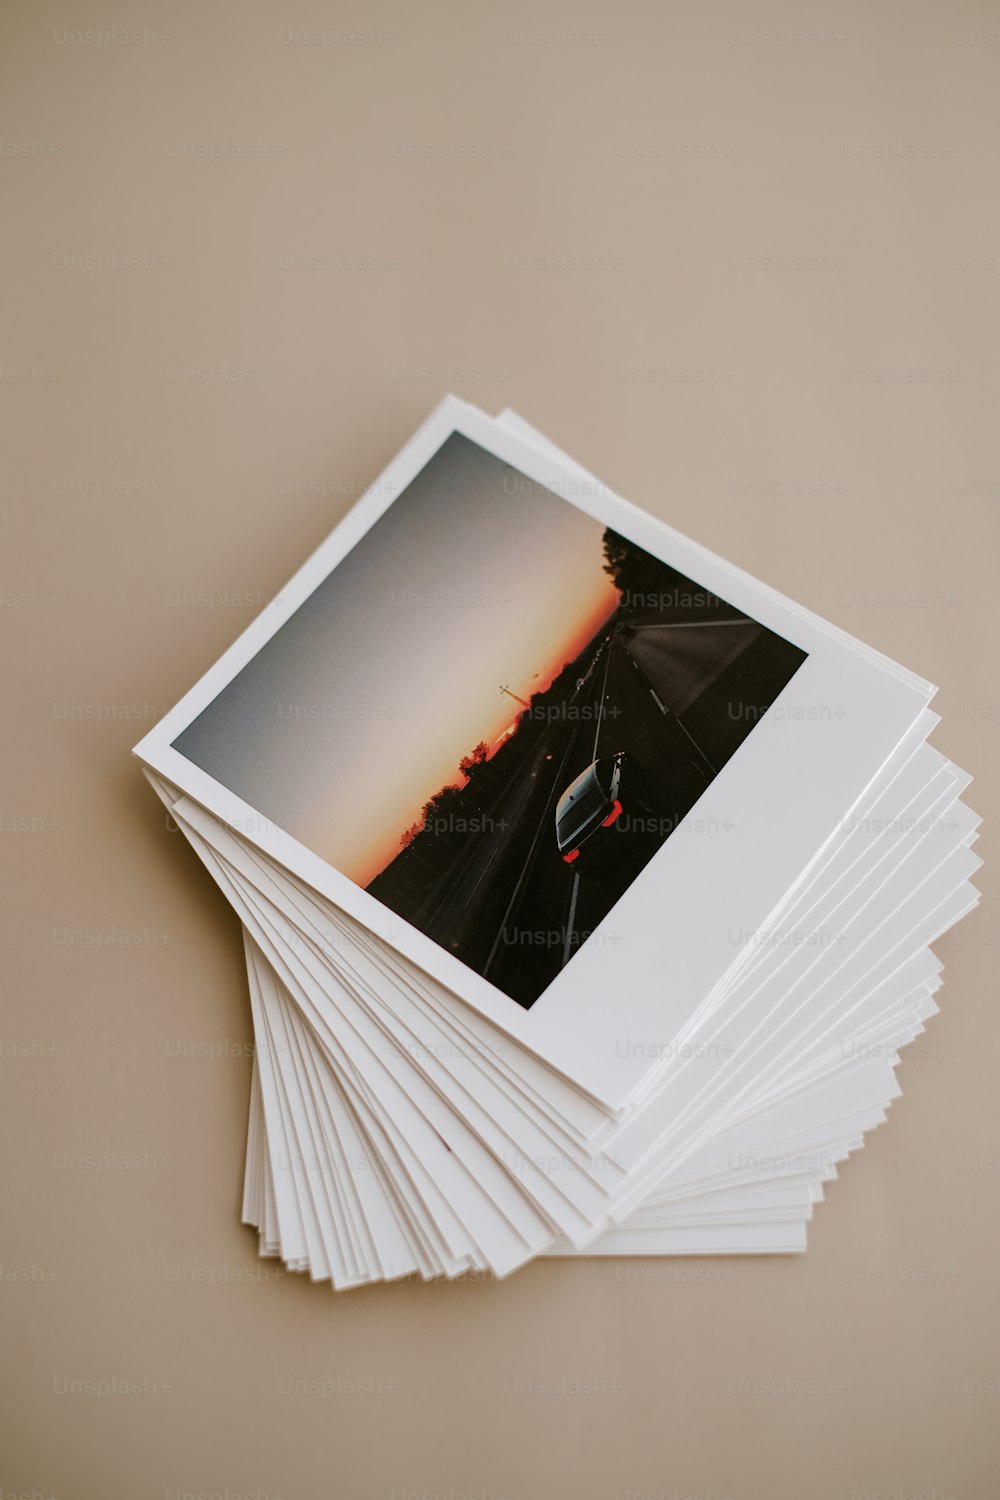 une pile de photos Polaroid posée sur une table